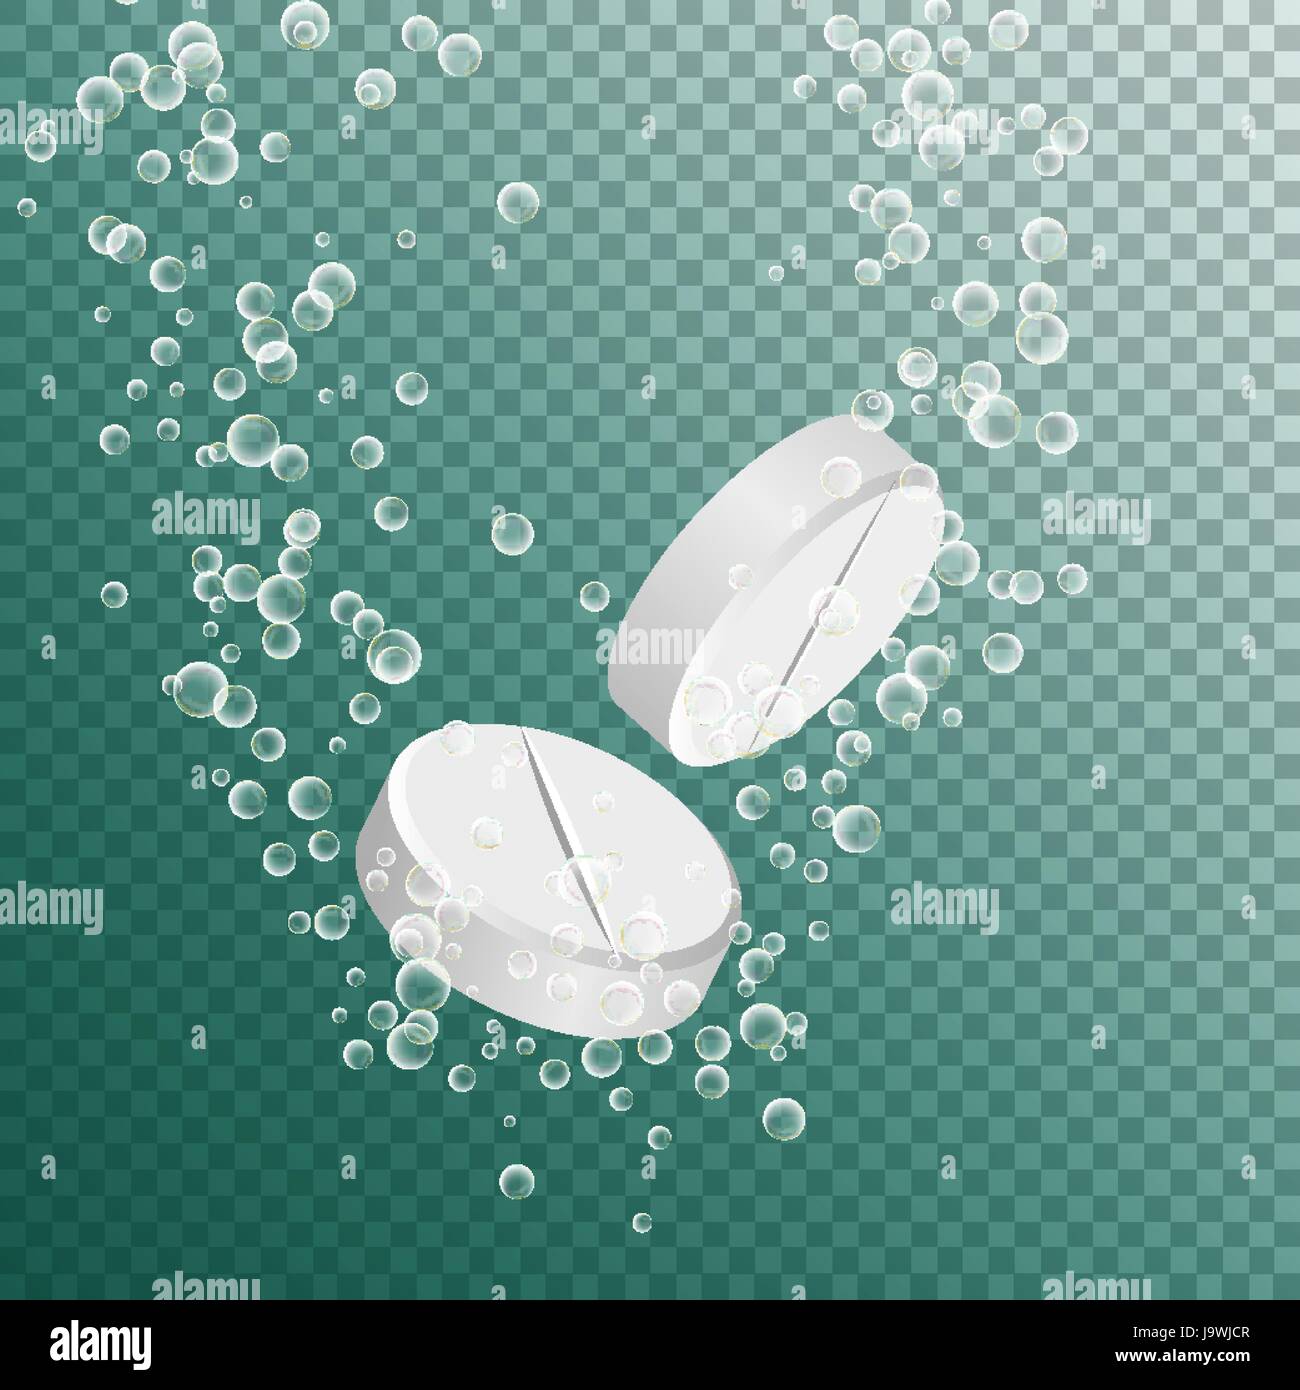 Brausetabletten Medizin. Sprudelnde Tablette auflösen. Weiße Runde Pille  ins Wasser Blasen fallen Stock-Vektorgrafik - Alamy